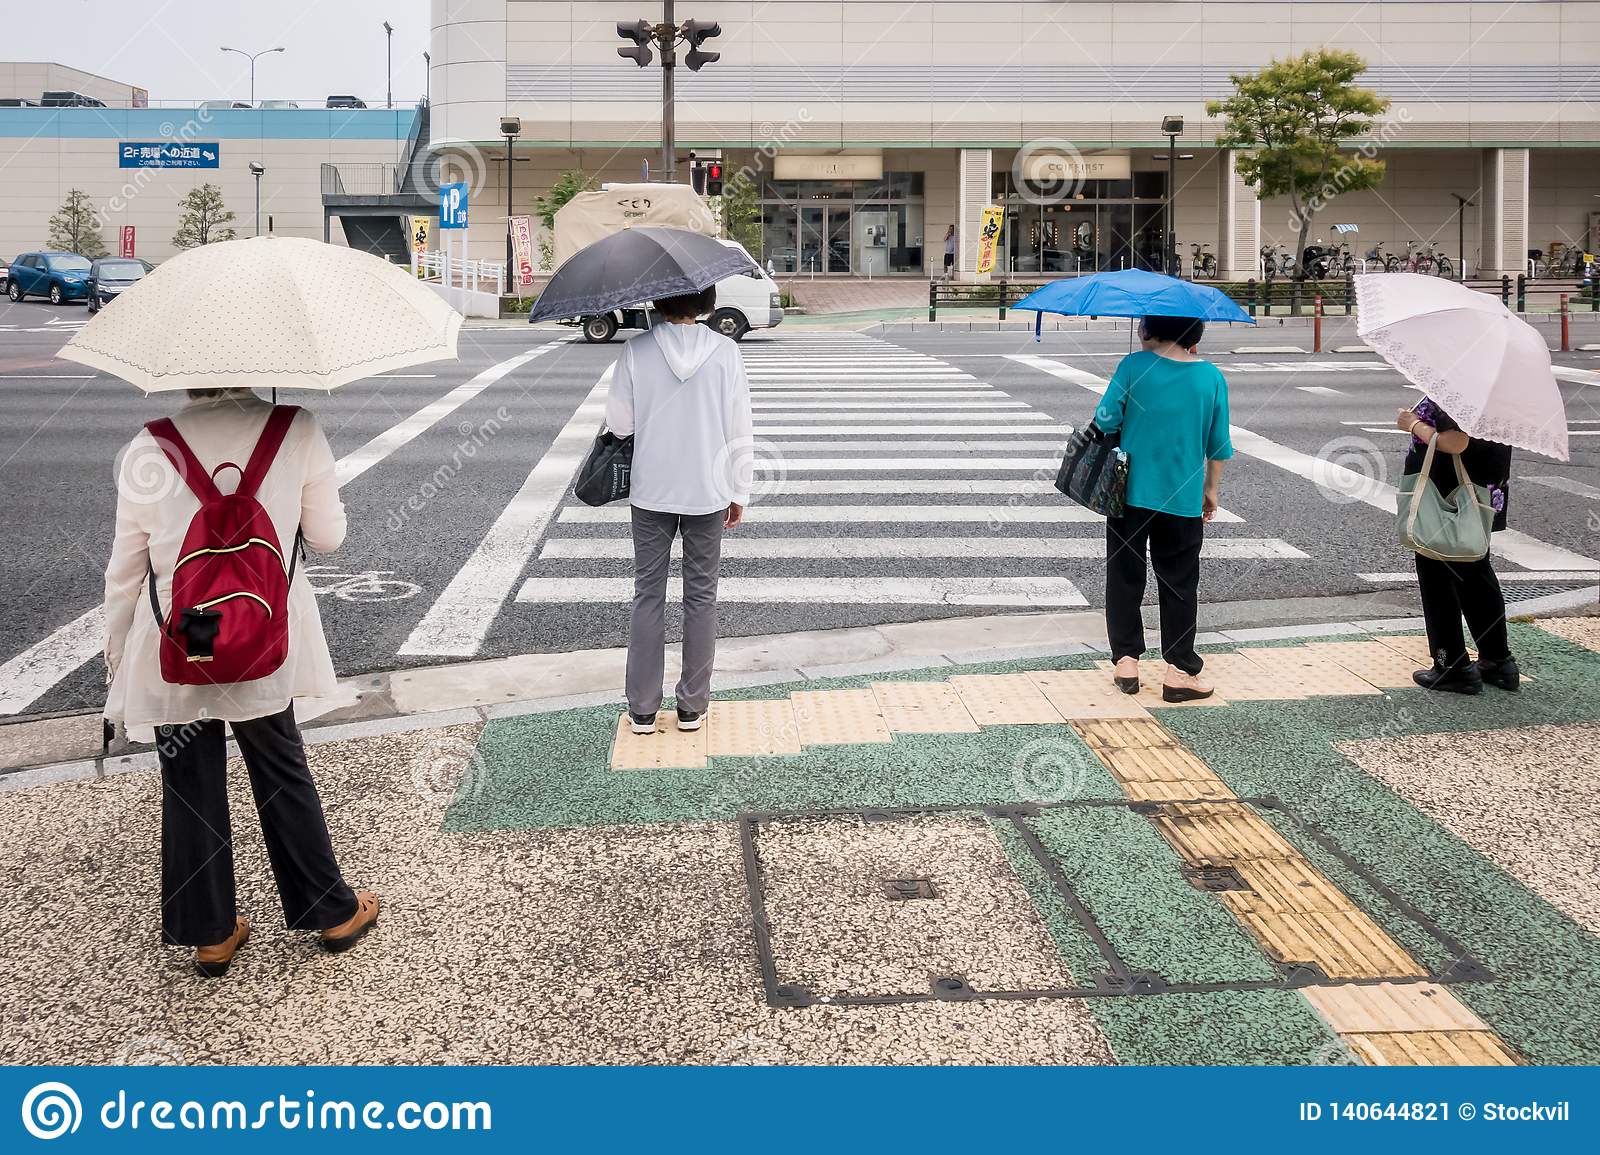 Four ladies with umbrellas